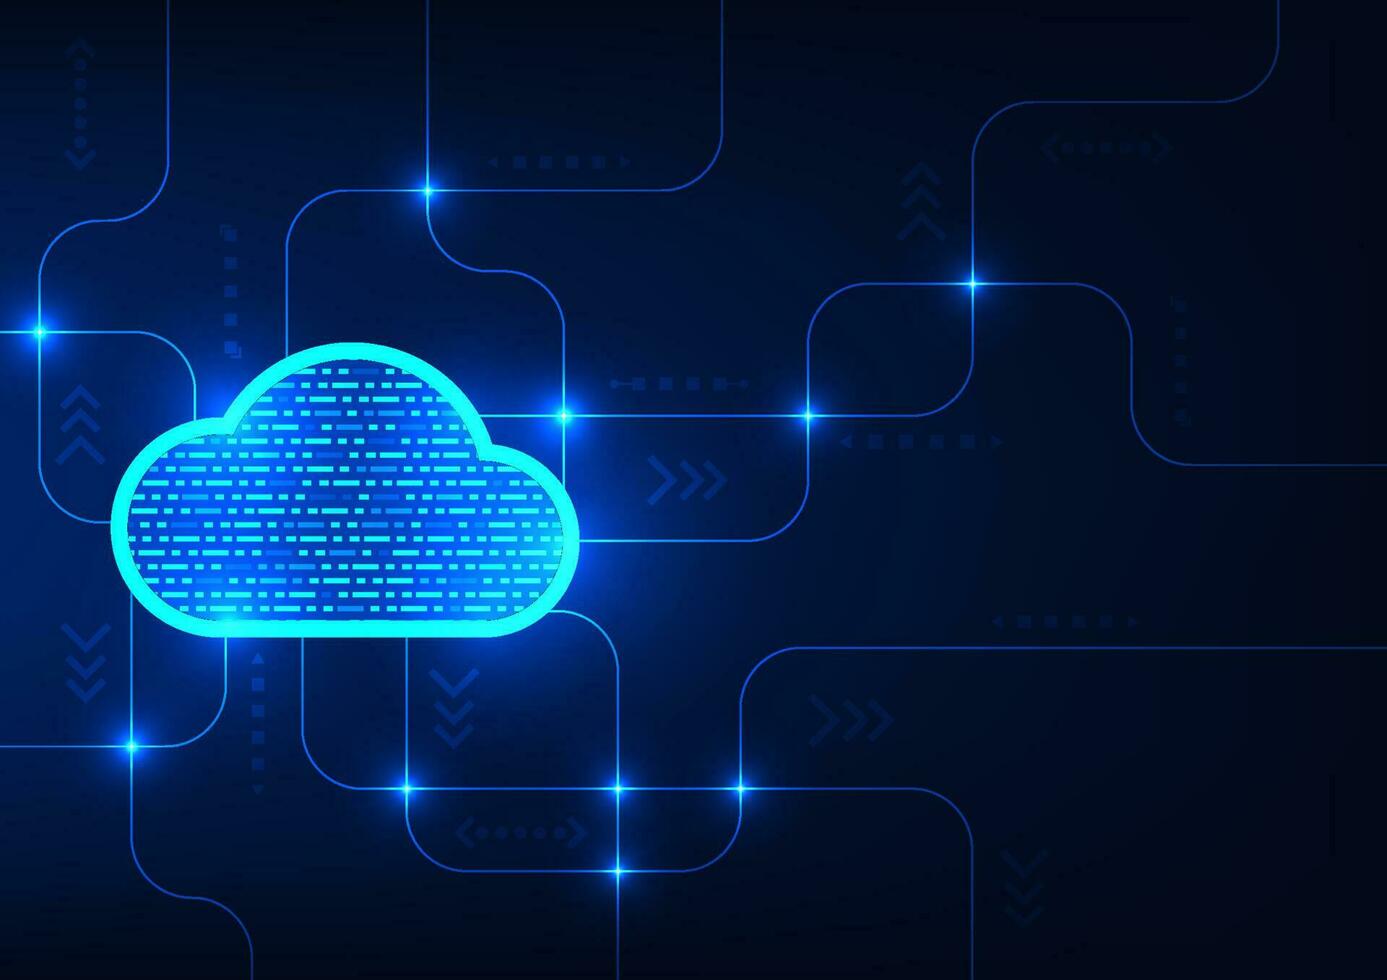 wolk technologie voor veilig en beveiligen gegevens opslagruimte over- de internetten. en kan ook sturen informatie naar bedrijf partner. het is online opslagruimte overal en veilig naar werk met. vector